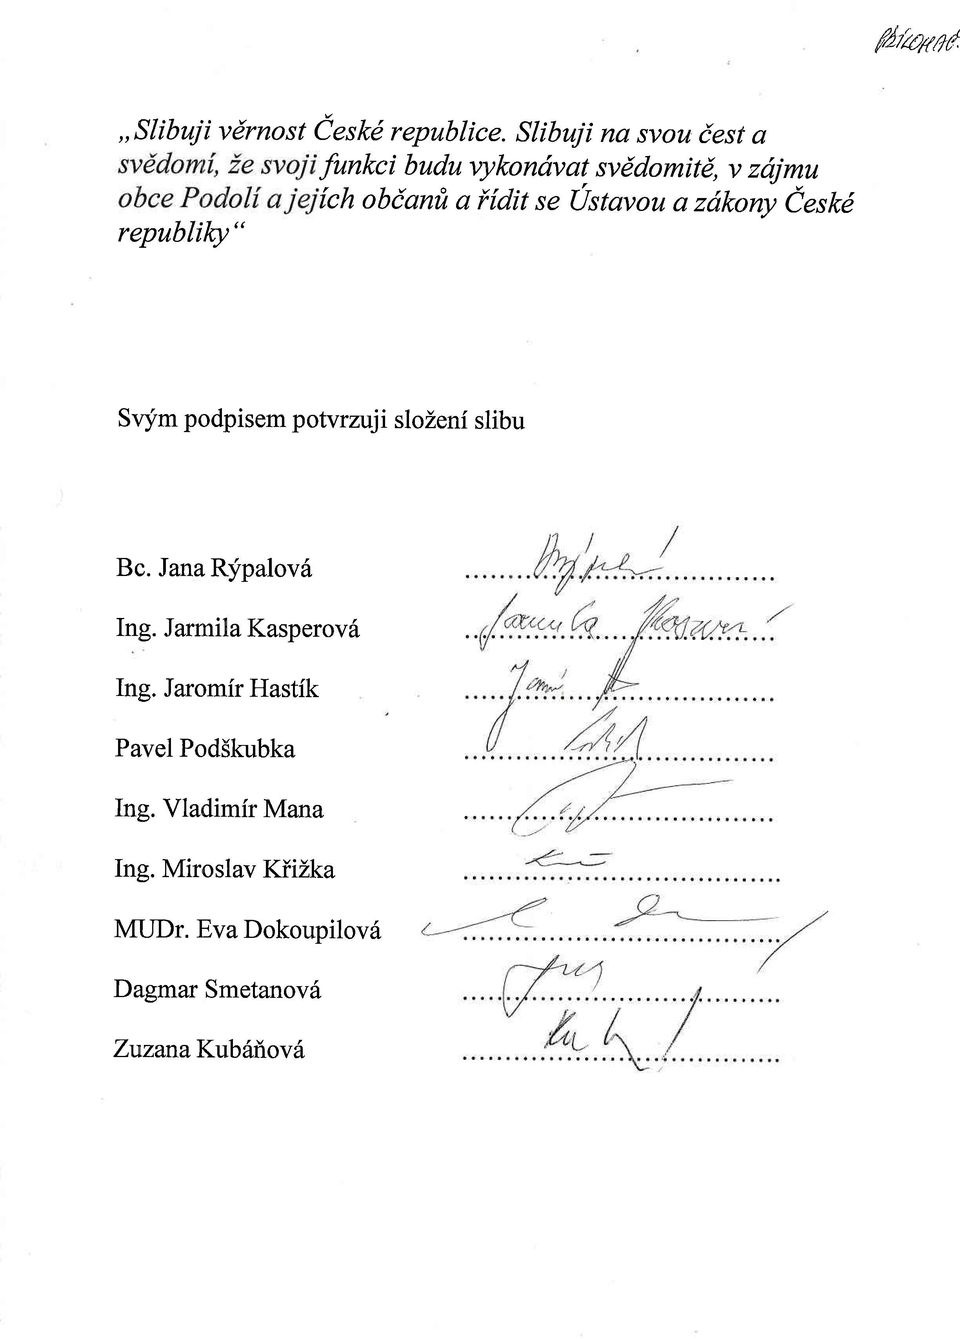 a zdkanv Ceskd republilcy " Svym podpisem potvrzuji slozeni slibu Bc. Jana Rypalov6 Ing.